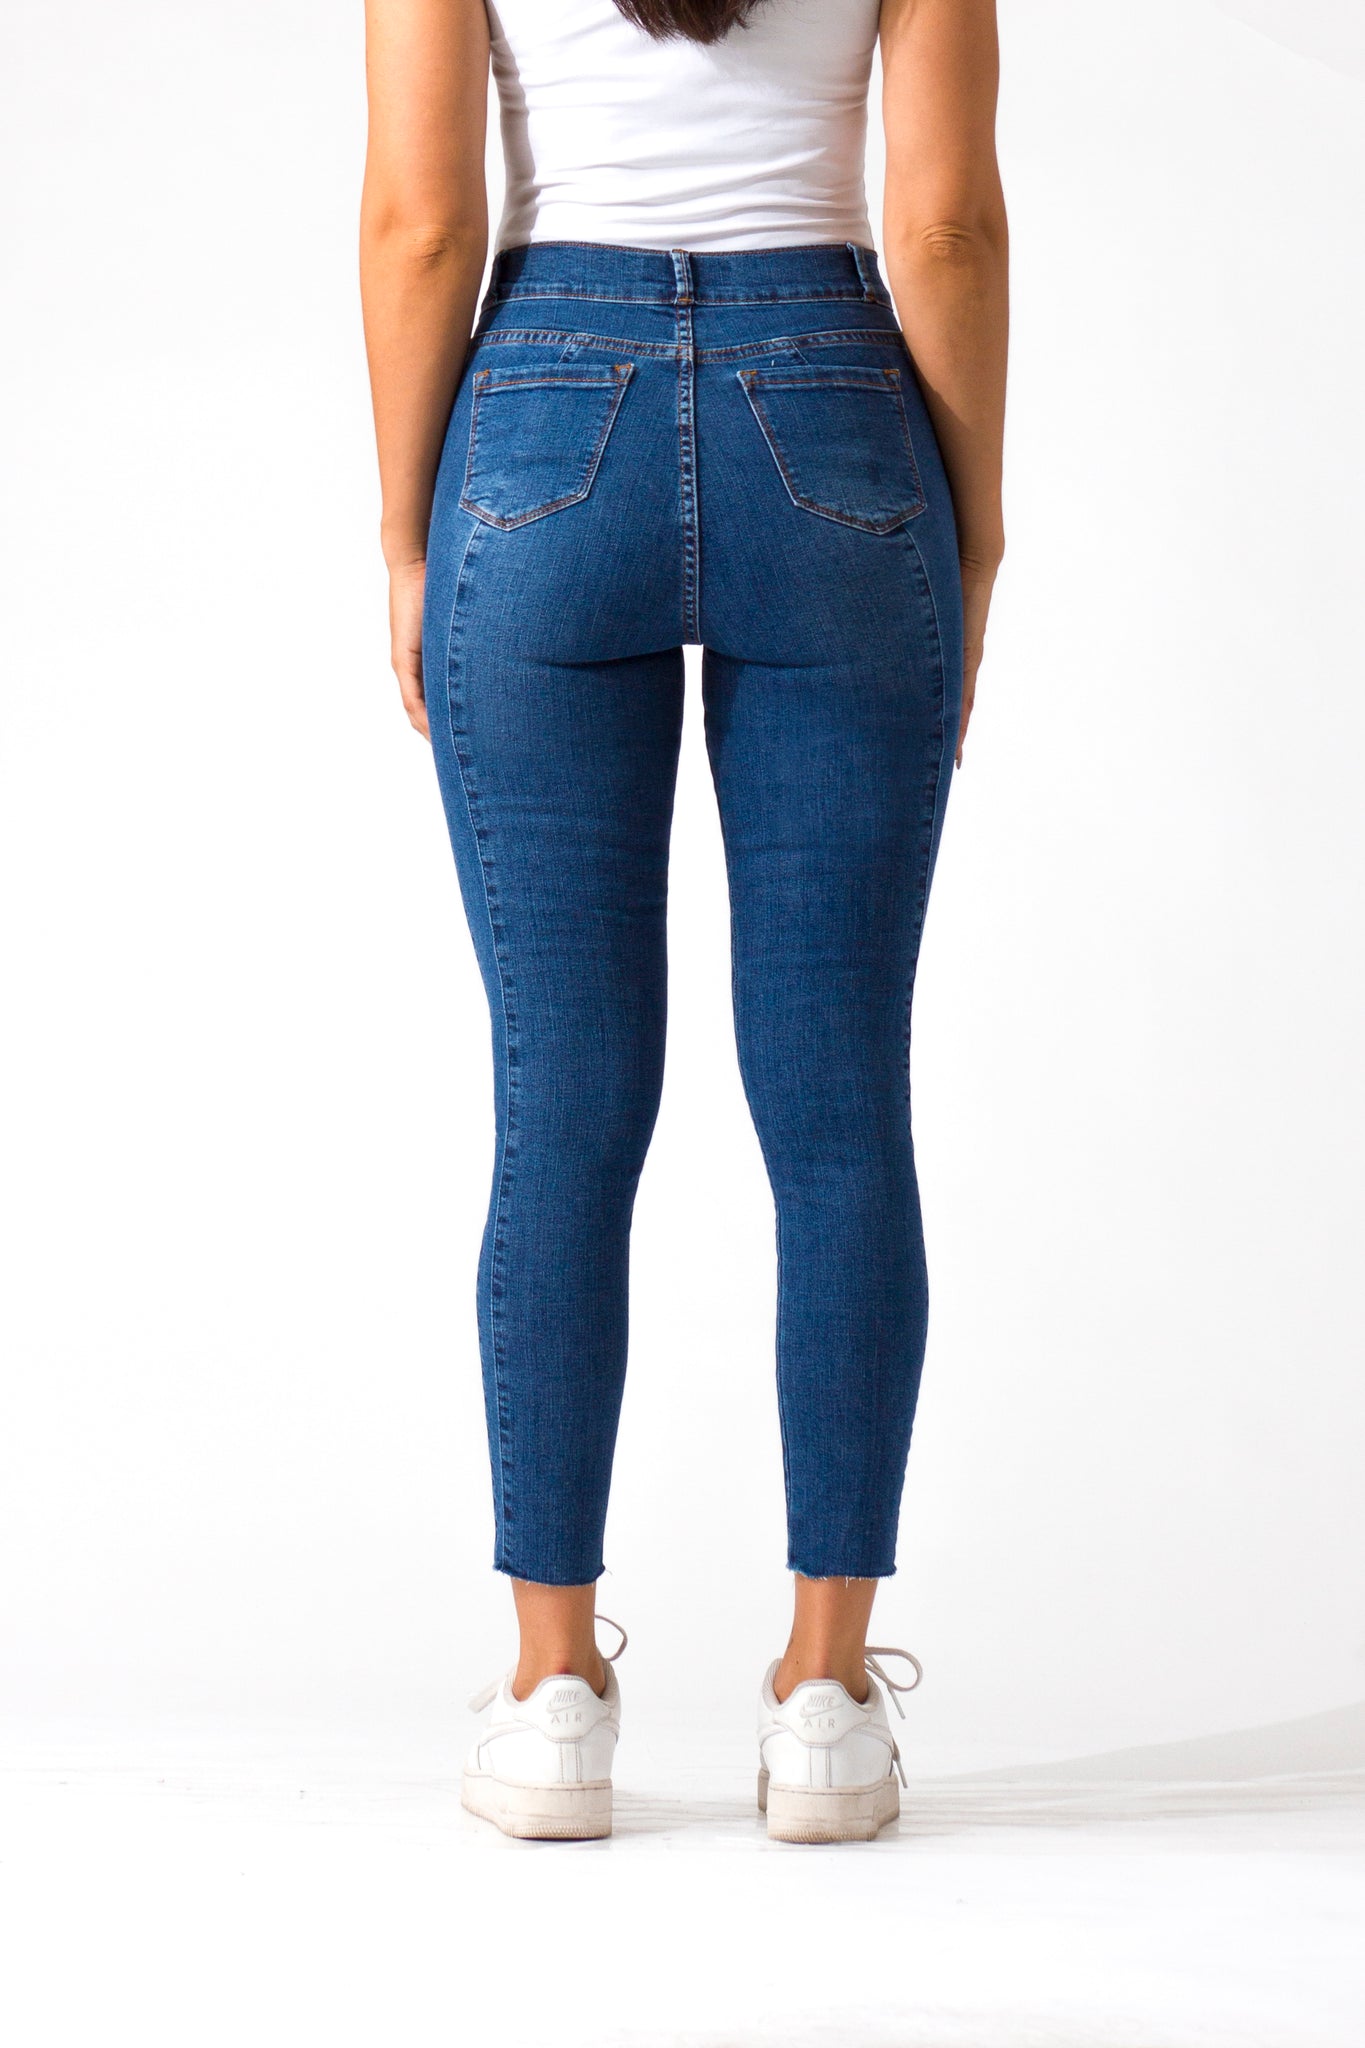 OHPOMP!® Cintura Media Skinny Jeans Ankle Azul Medio D1486